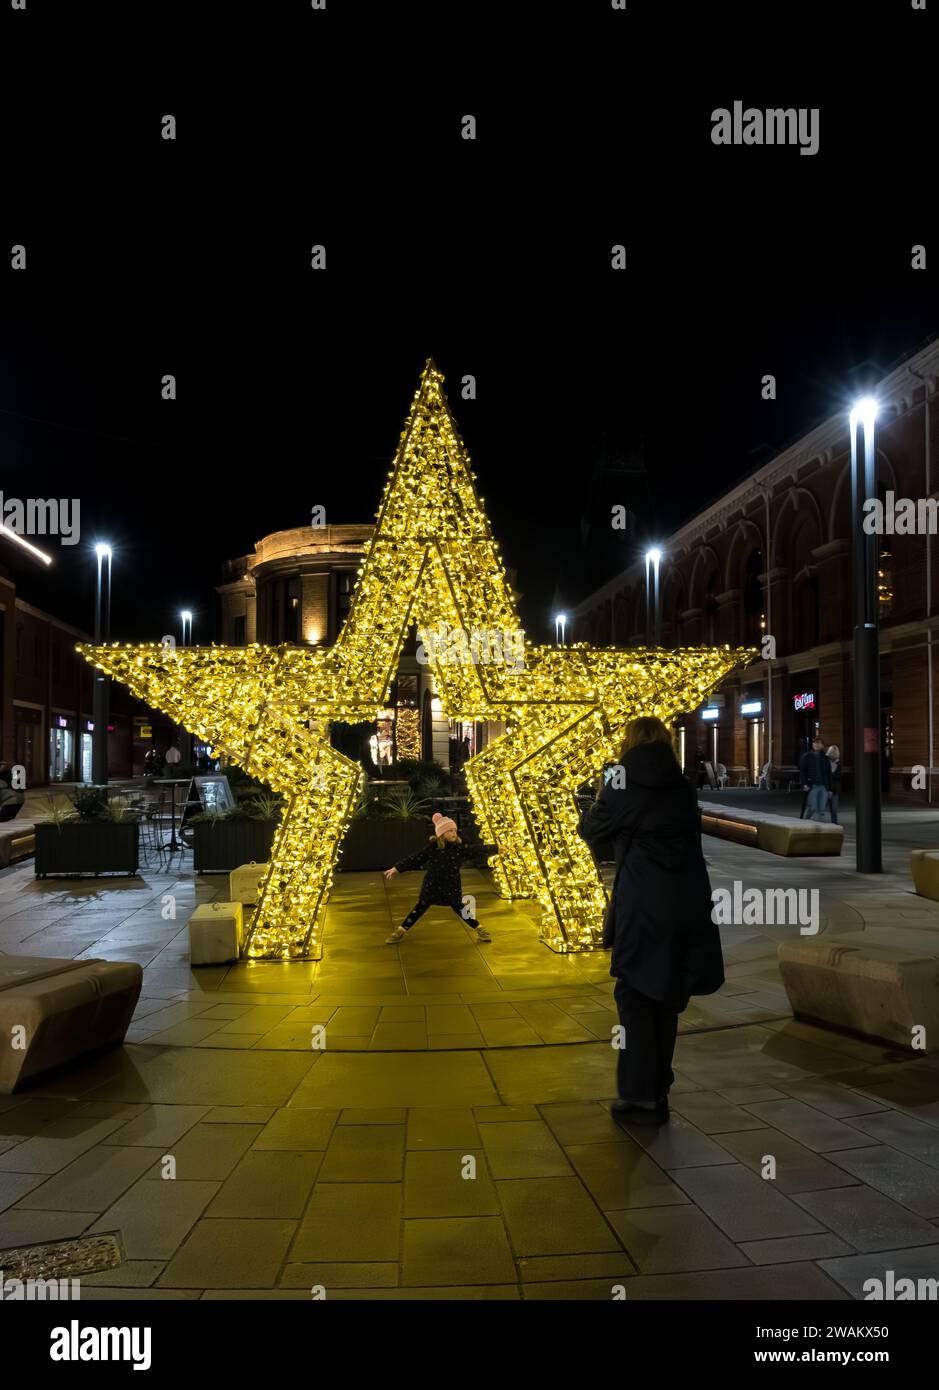 Donna che scatta foto sul cellulare di una giovane ragazza che si posa sotto la stella d'oro, Cornhill, Lincoln City, Lincolnshire, Inghilterra, REGNO UNITO Foto Stock